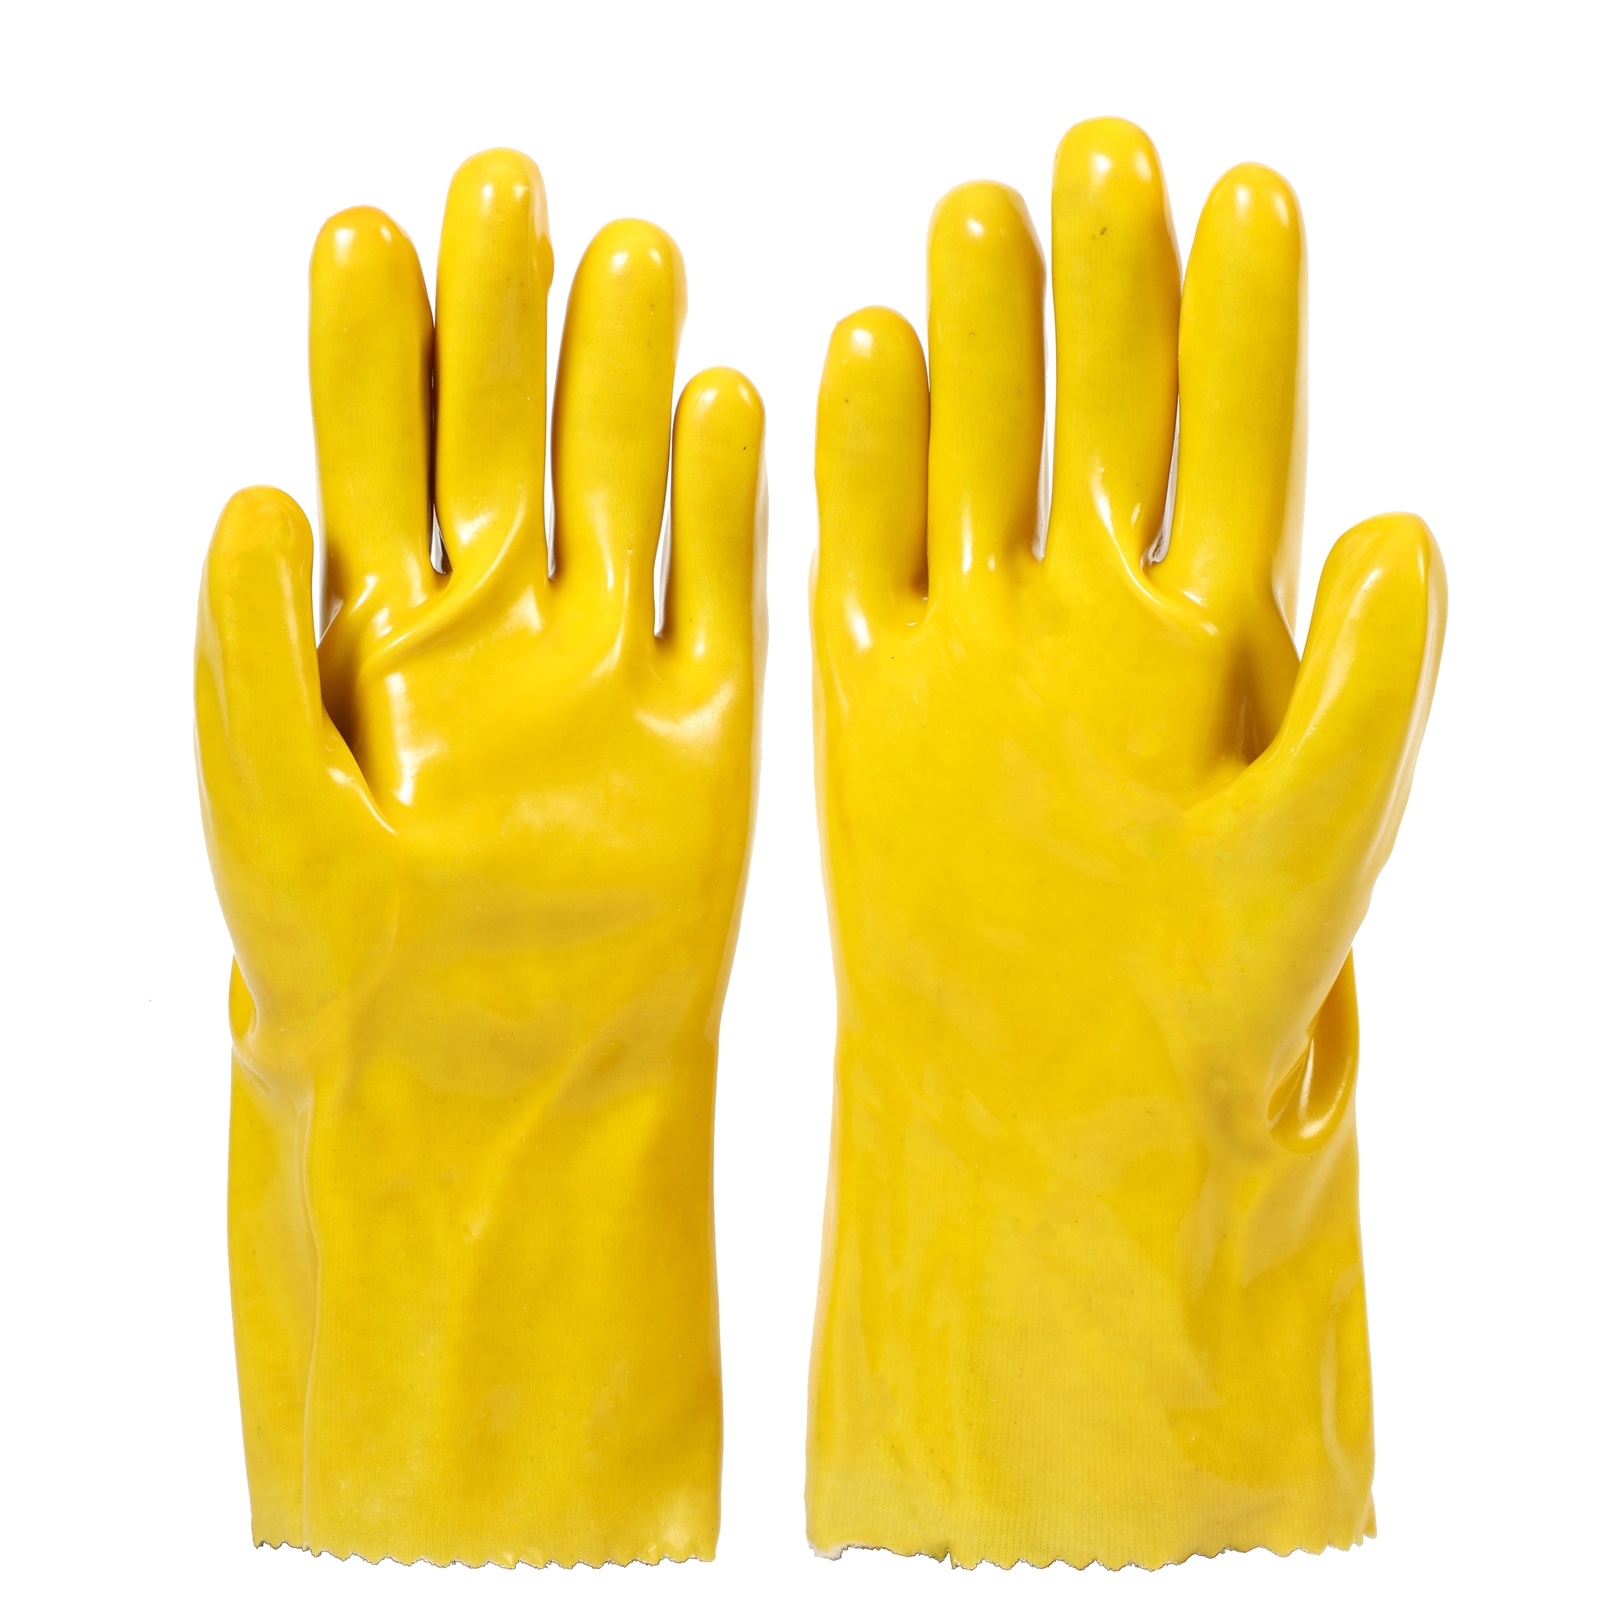 Handschoenen met PVC-coating, zuur- en oliebestendig, anti-giftig en vuilafstotend, geschikt voor contact met pesticiden, chemische meststoffen, giftige stoffen